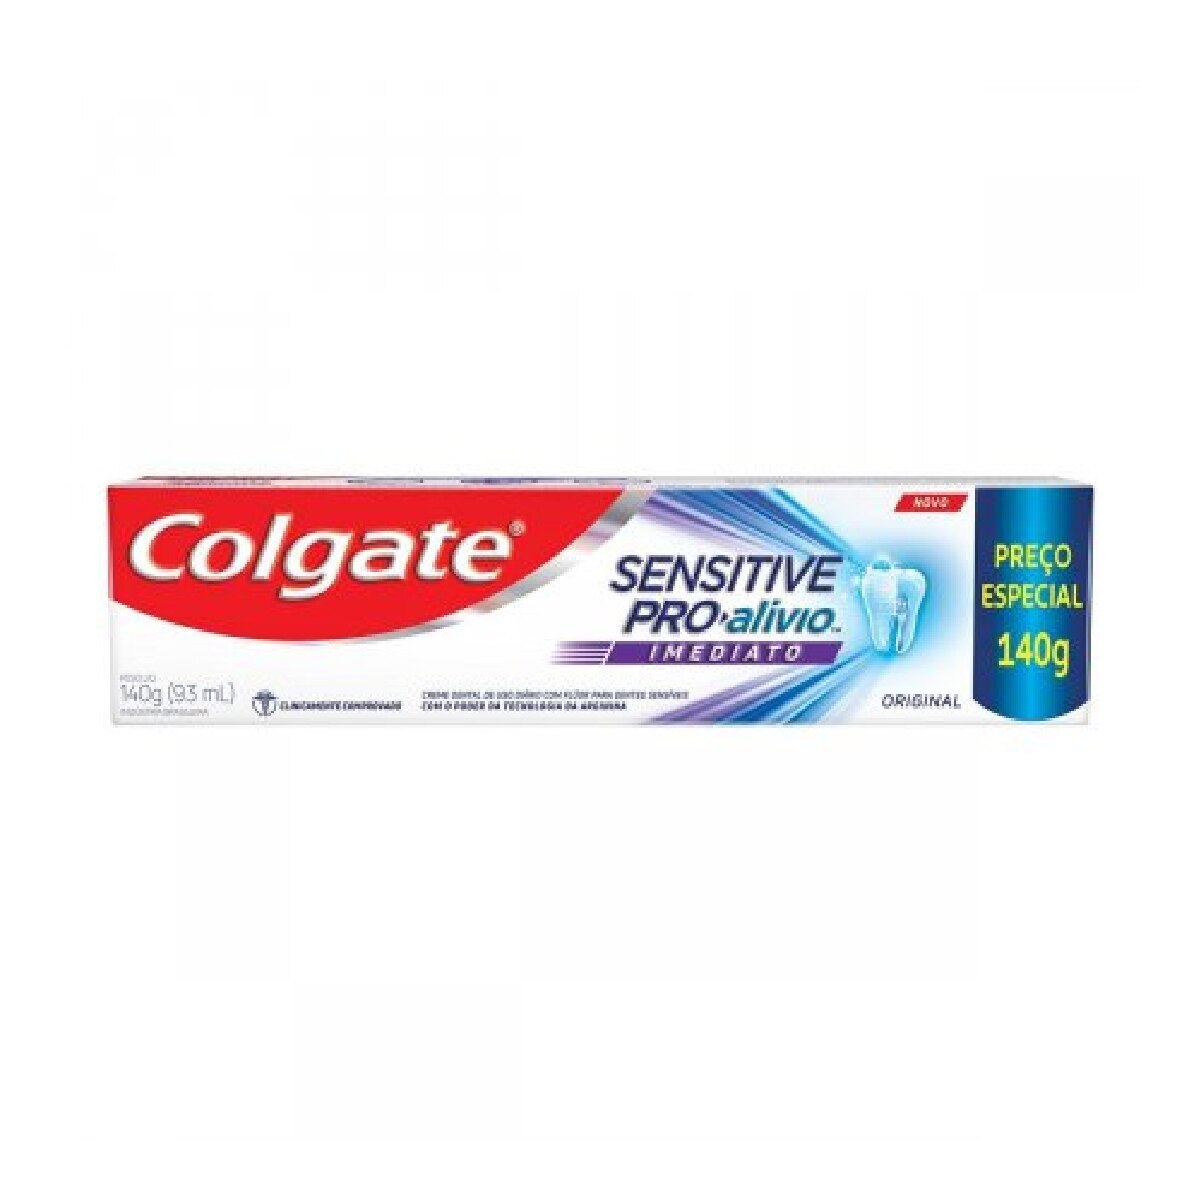 Creme Dental Colgate Sensitive Pro-Alivio Imediato Original 140g Preco Especial